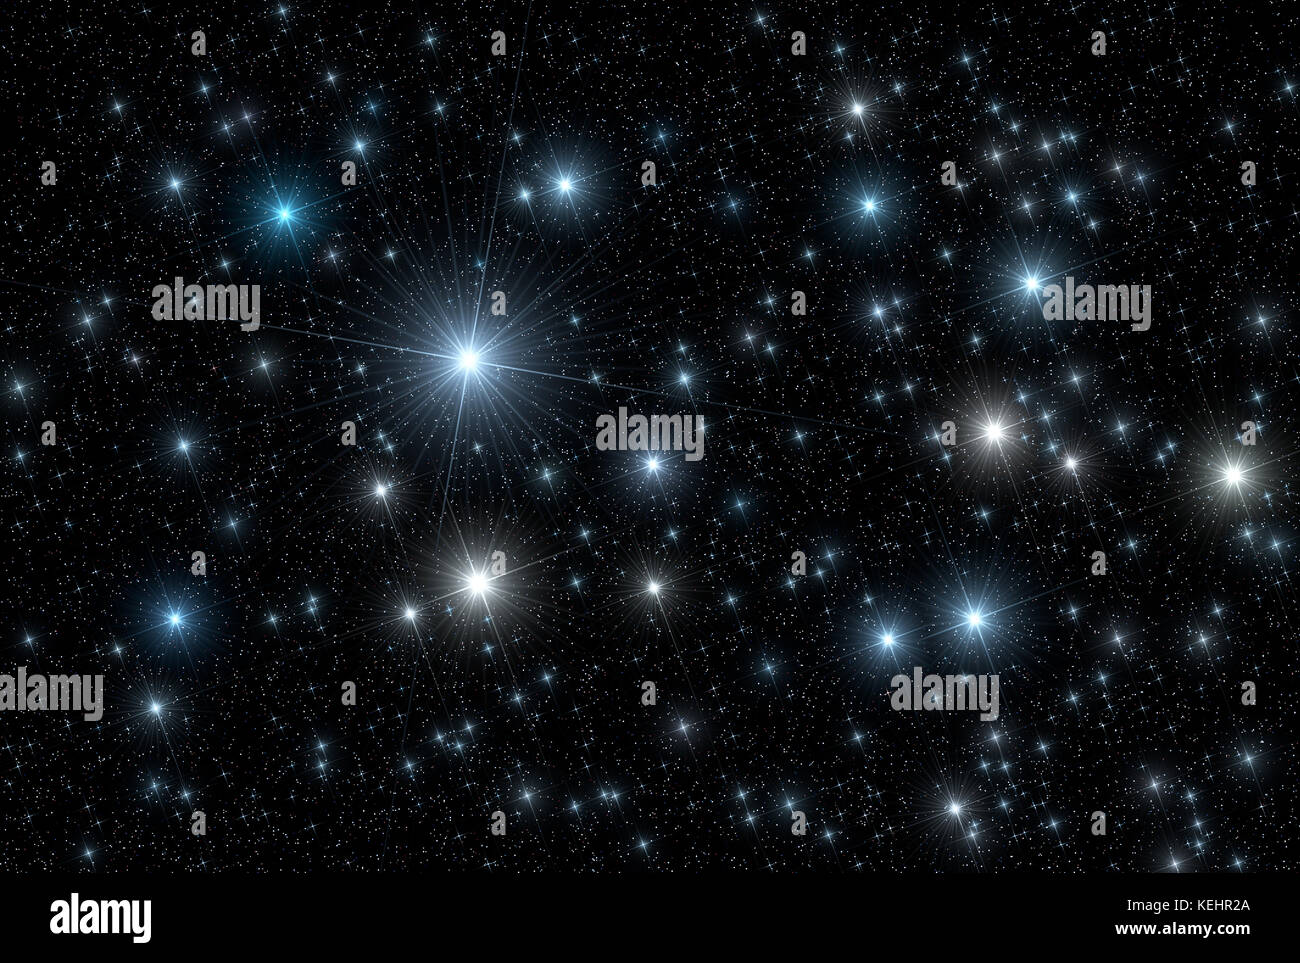 L'espace / astronomie univers sky abstract background : lot de lumières scintillantes étoiles scintillantes de différentes tailles et couleurs qui couvre toile noir foncé. c Banque D'Images